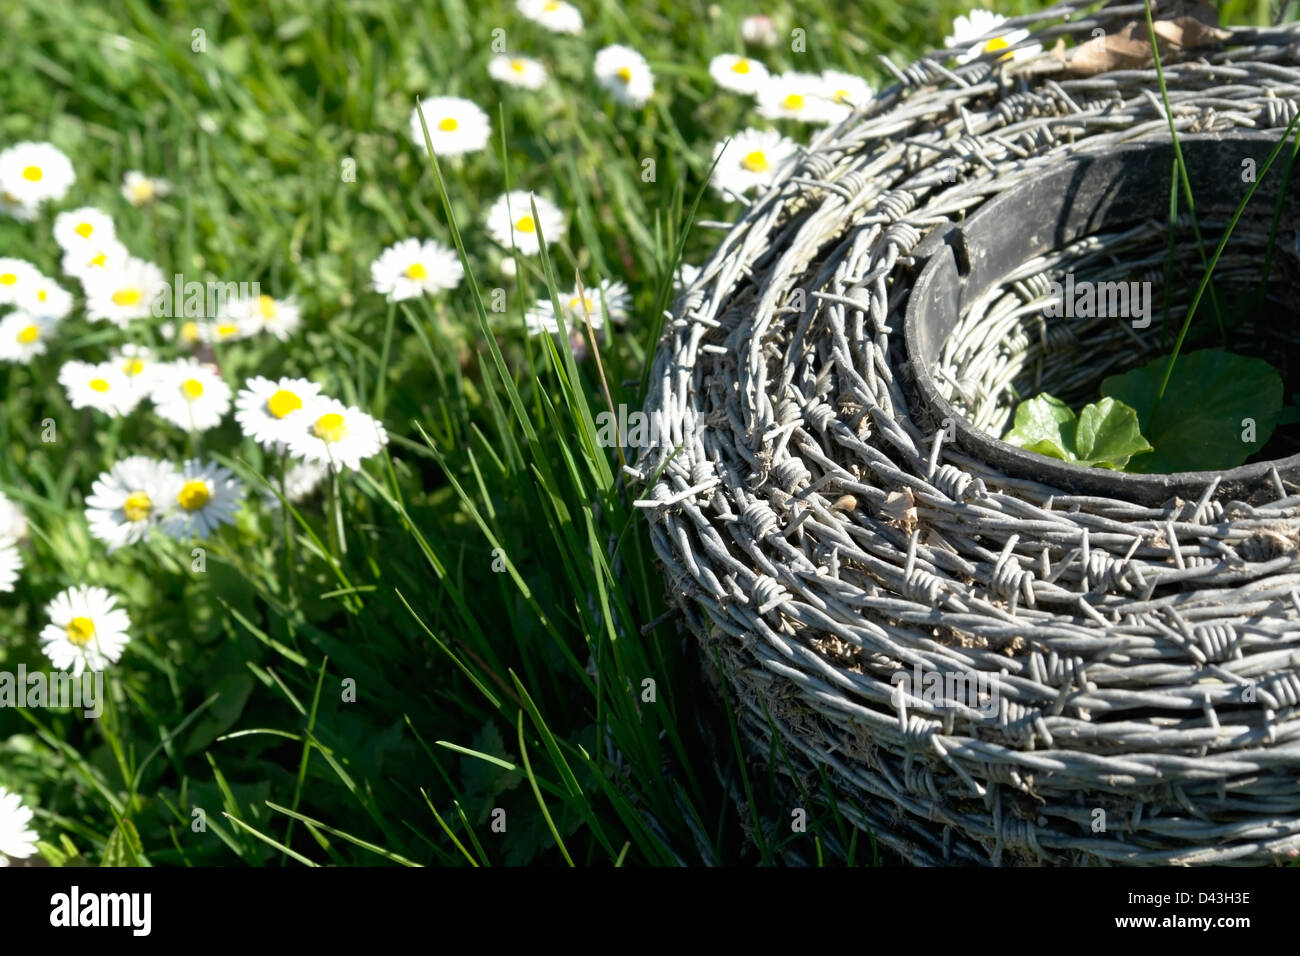 Rollen Sie aus Stacheldraht auf einer Wiese voller Gänseblümchen Blumen im Frühjahr im sonnigen Ambiente Stockfoto